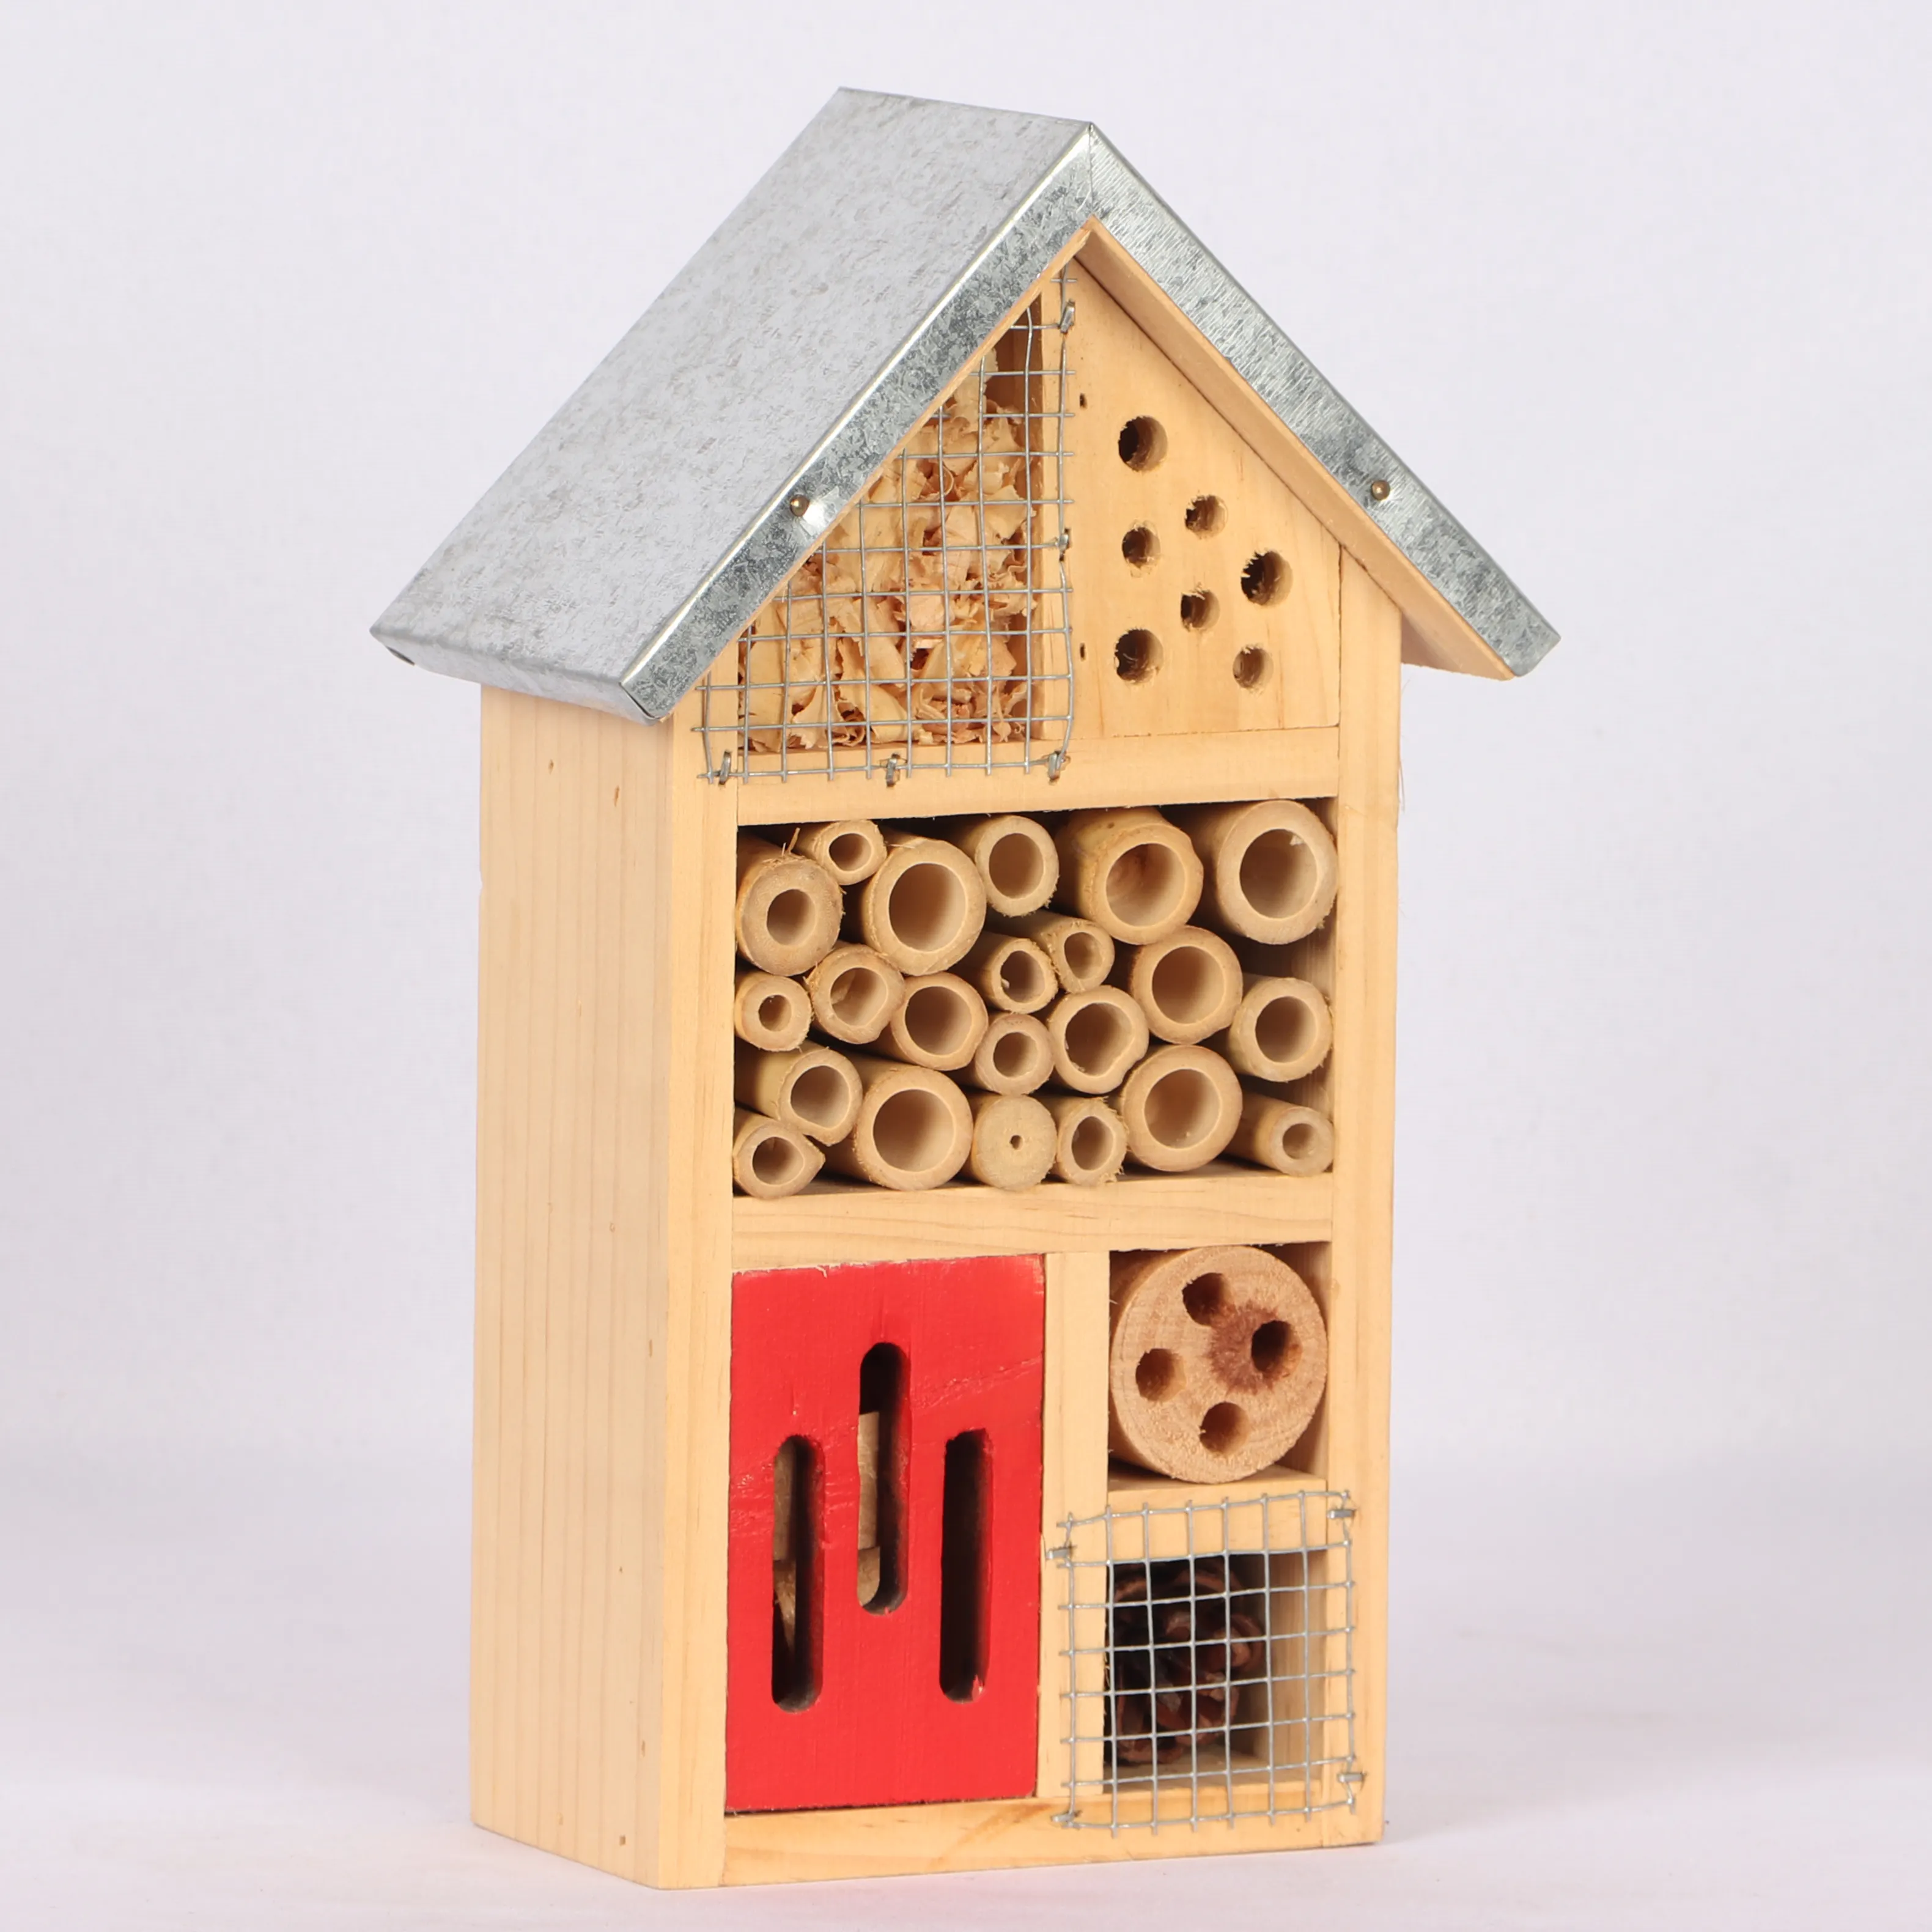 Maison à insectes avec toit en Zinc, insecte non traité, faite de bois naturel, pour les amis sauvages